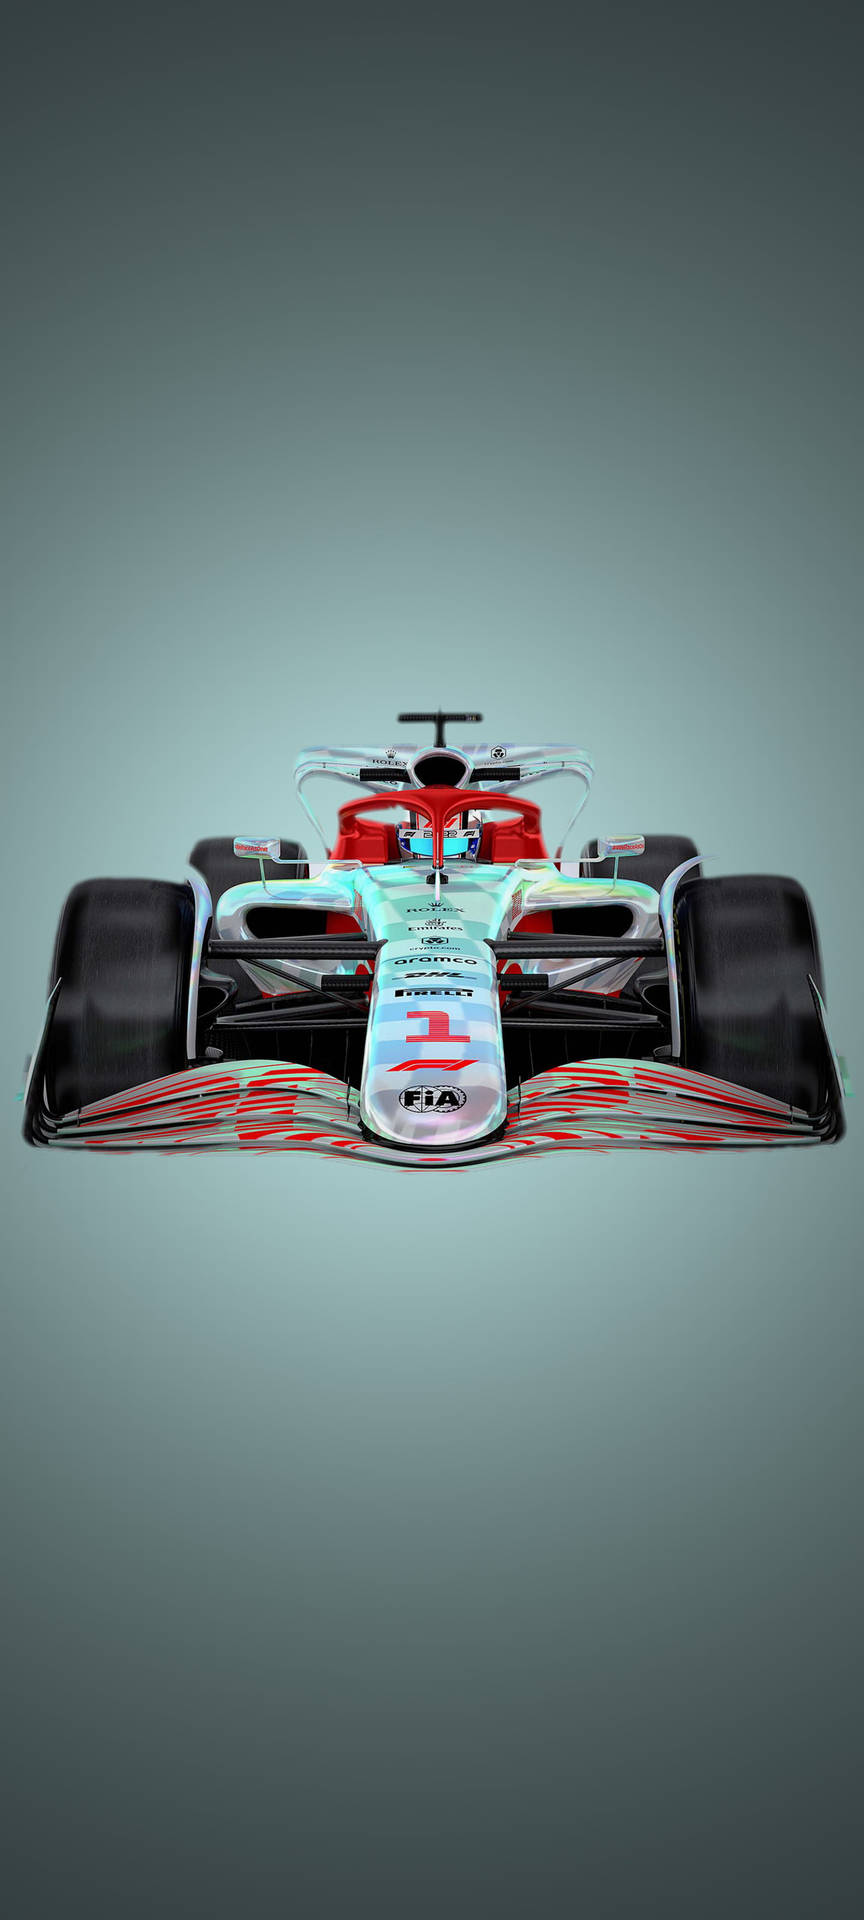 F1 Silver Arrows 2022